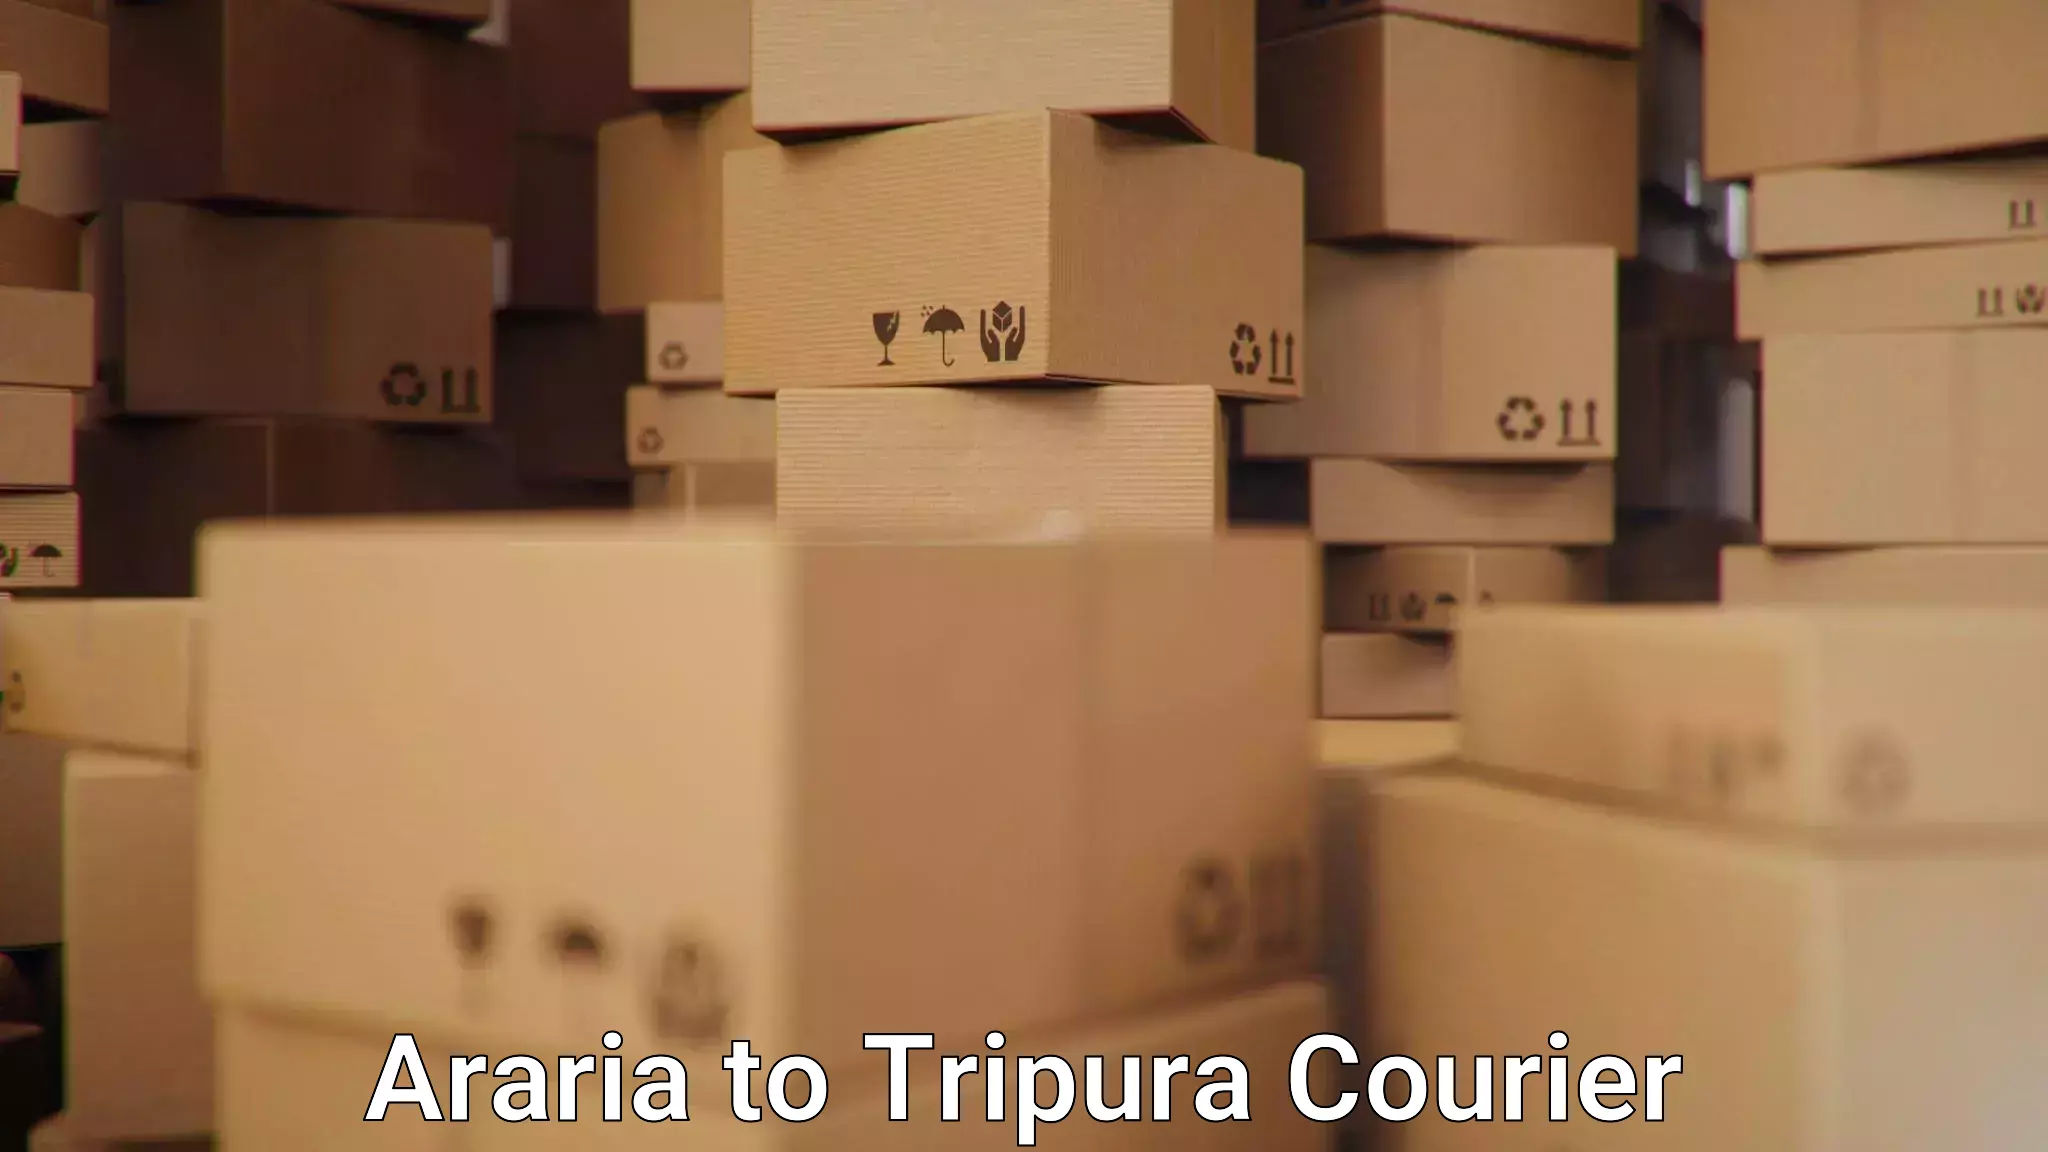 Courier rate comparison Araria to Tripura